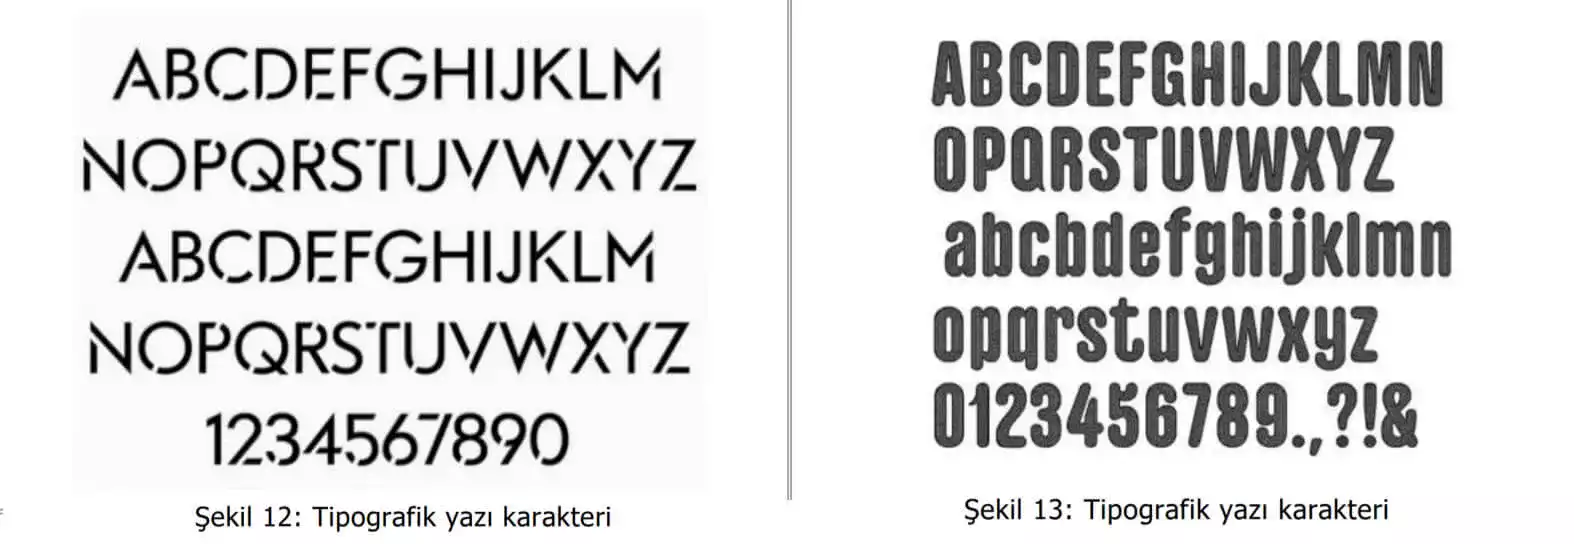 tipografik yazı karakter örnekleri-Tekirdağ Patent